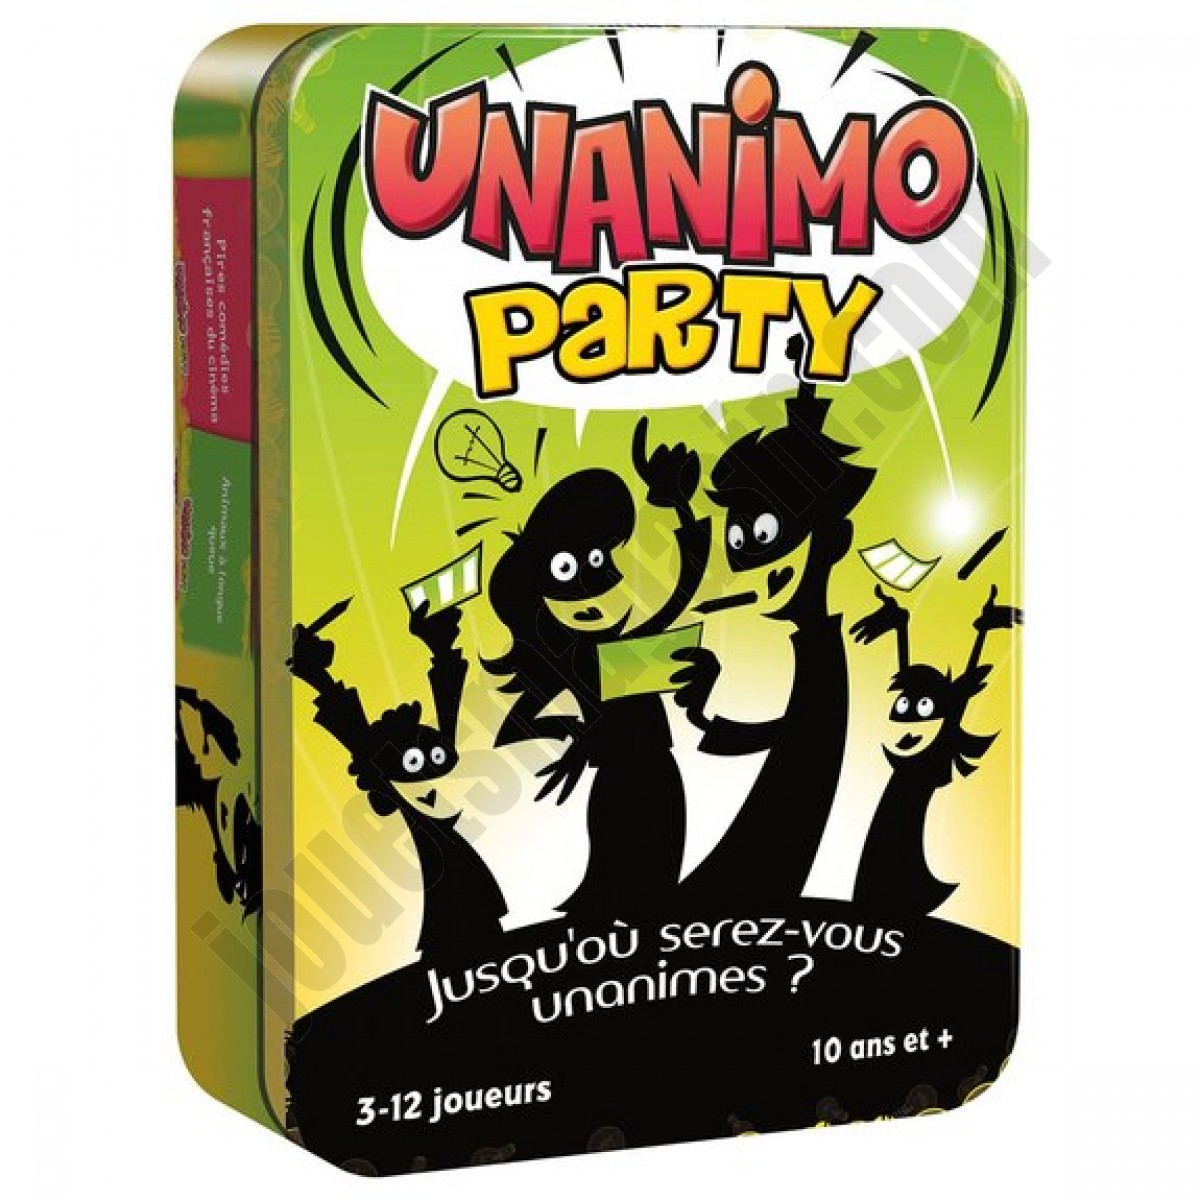 Unanimo party En promotion - Unanimo party En promotion